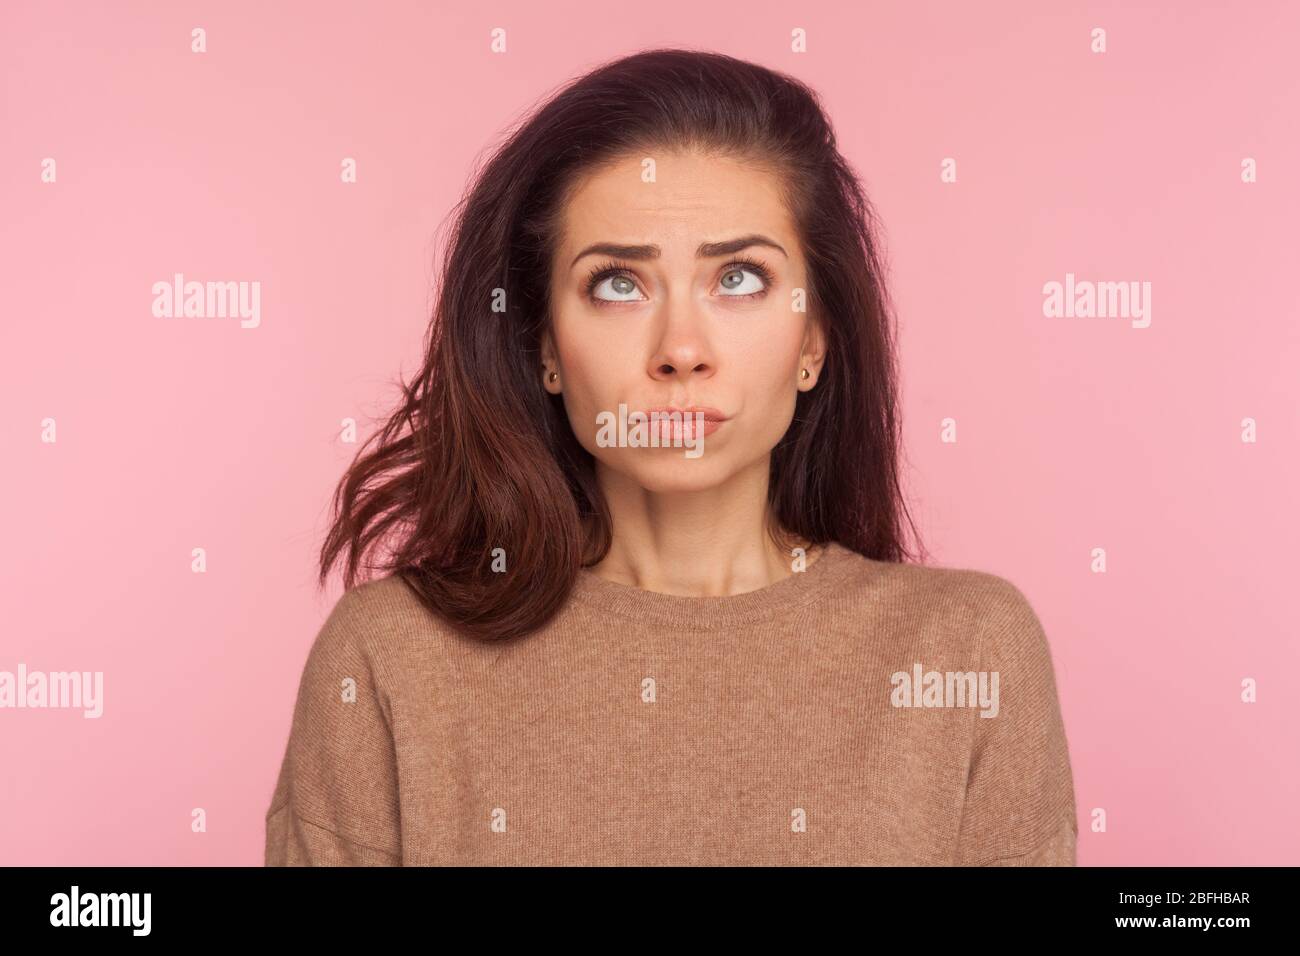 Porträt von peinlich lustige junge Frau mit Brünette Haar machen dumm komische Gesicht mit Augen gekreuzt, denken intensiv suchen dumm und verwirrt. In Stockfoto